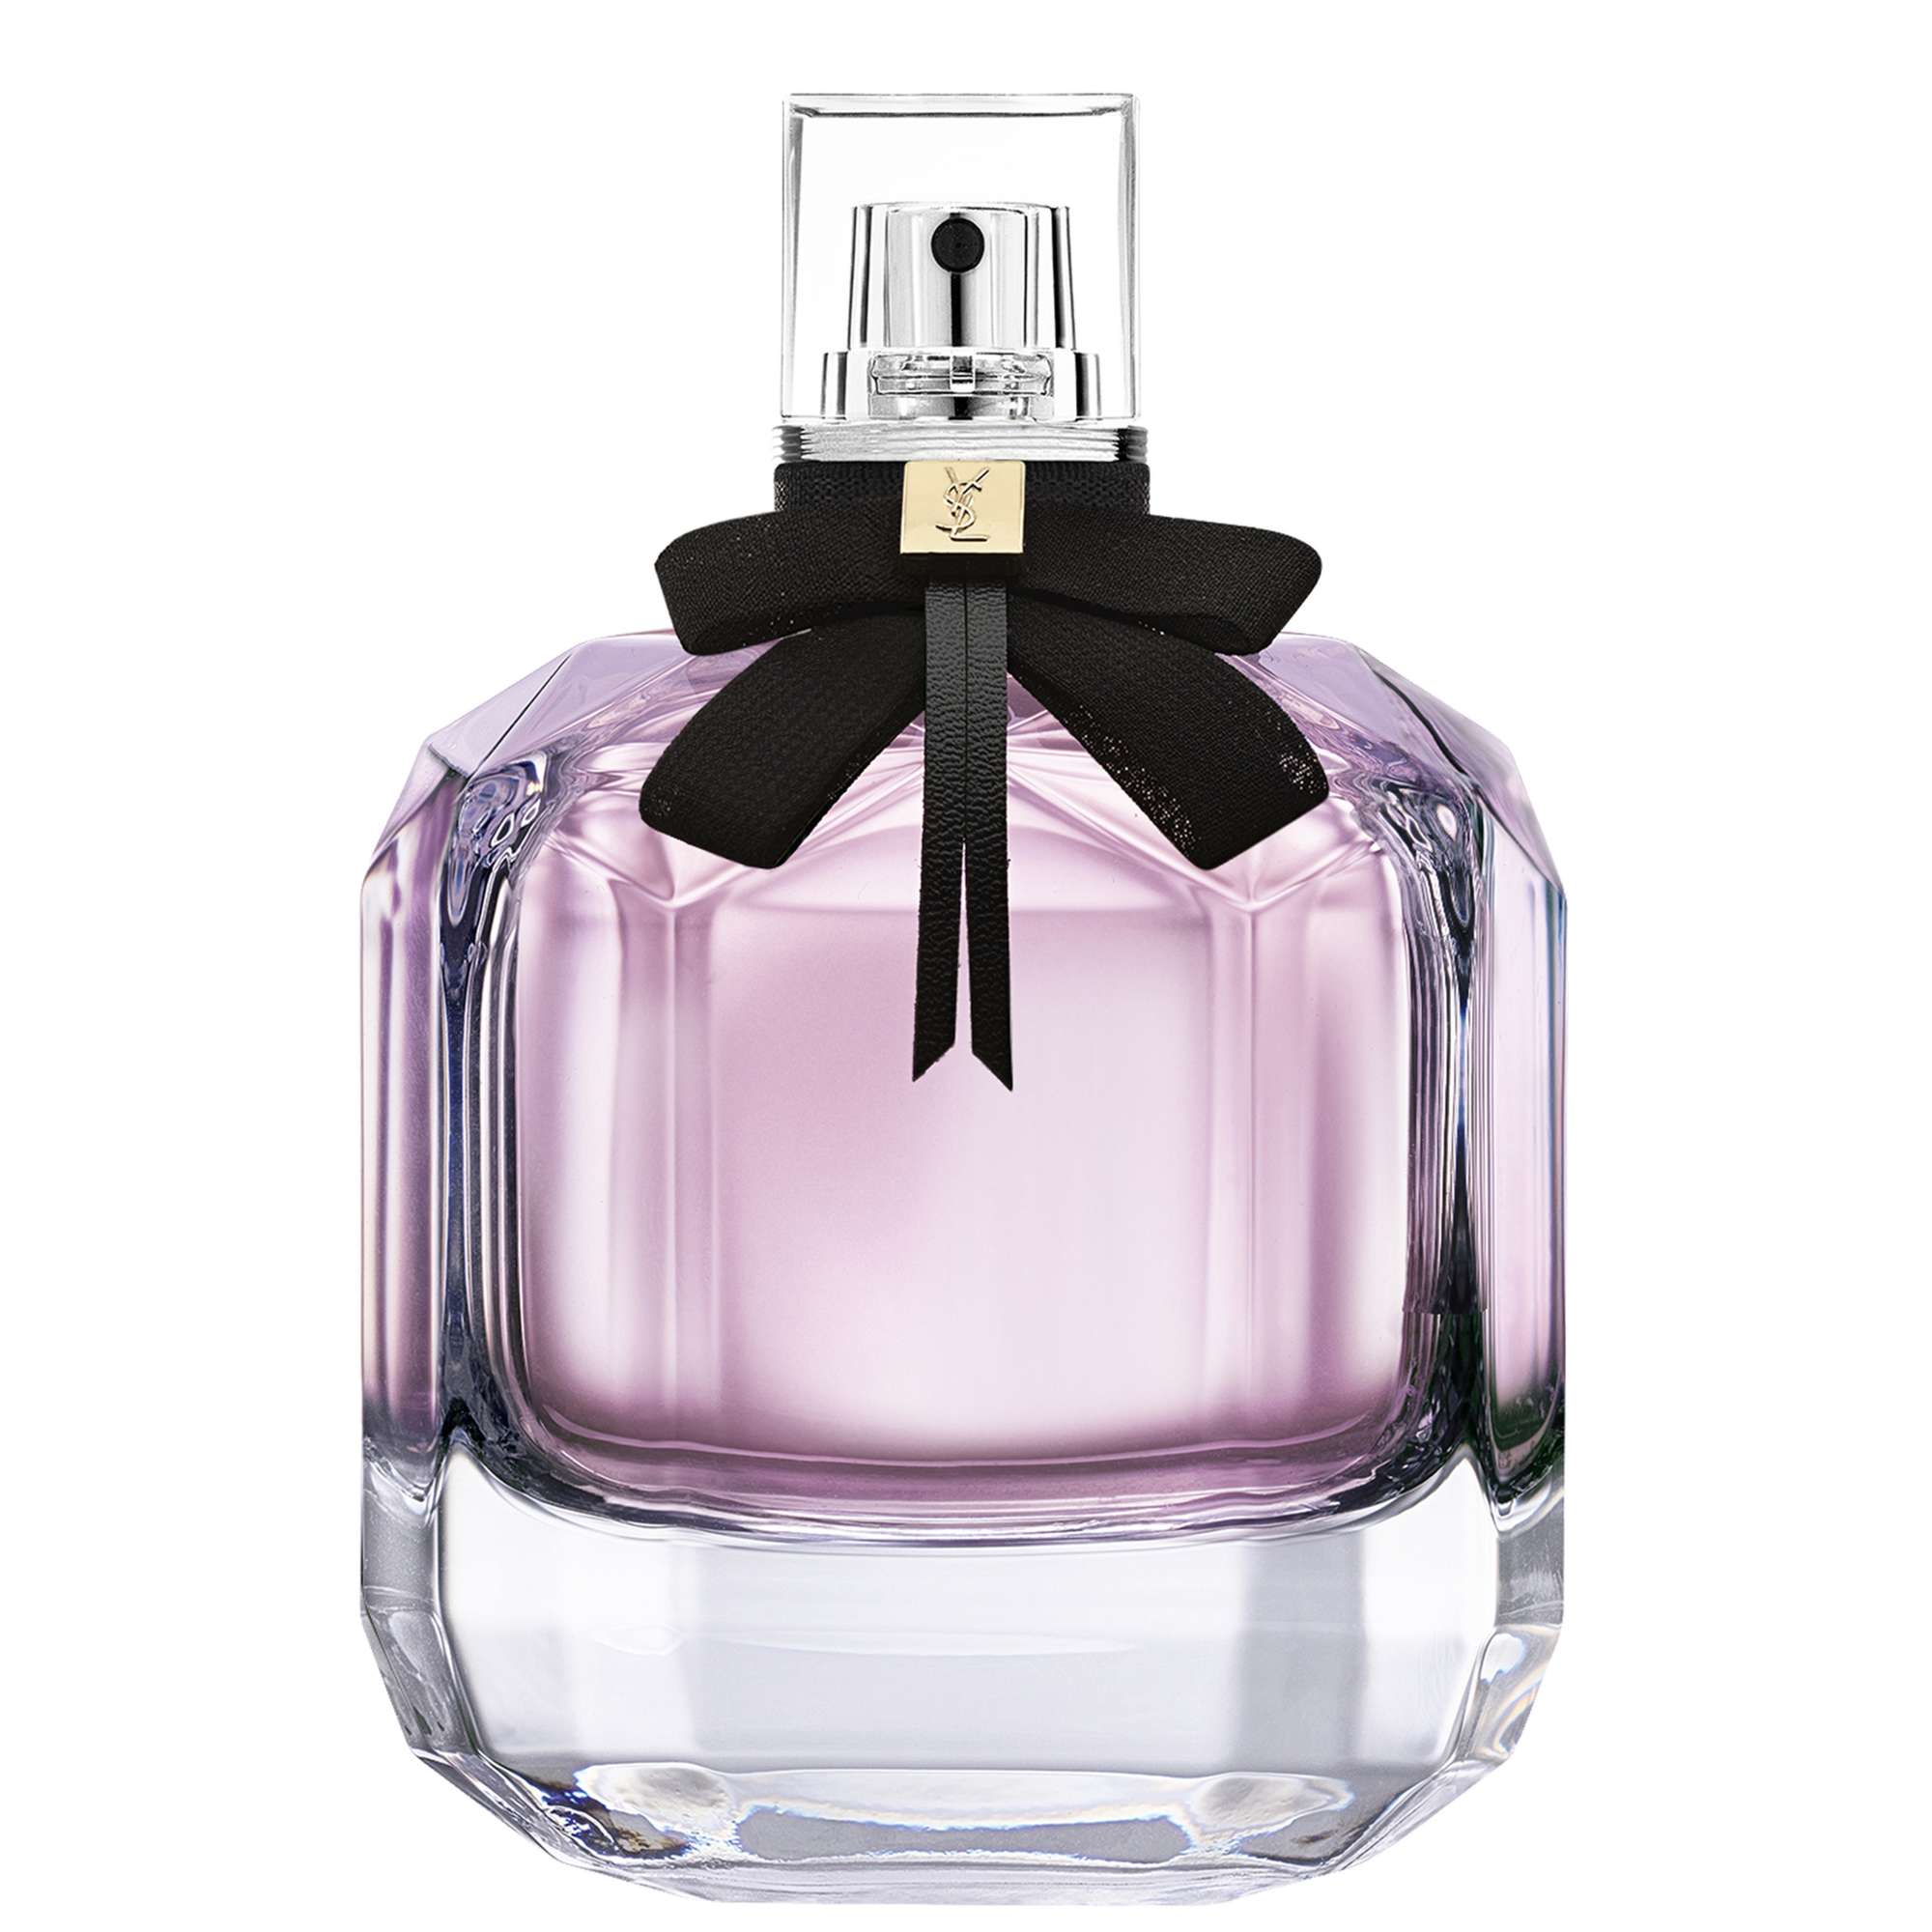 Photos - Women's Fragrance Yves Saint Laurent Mon Paris Eau de Parfum Spray 150ml 